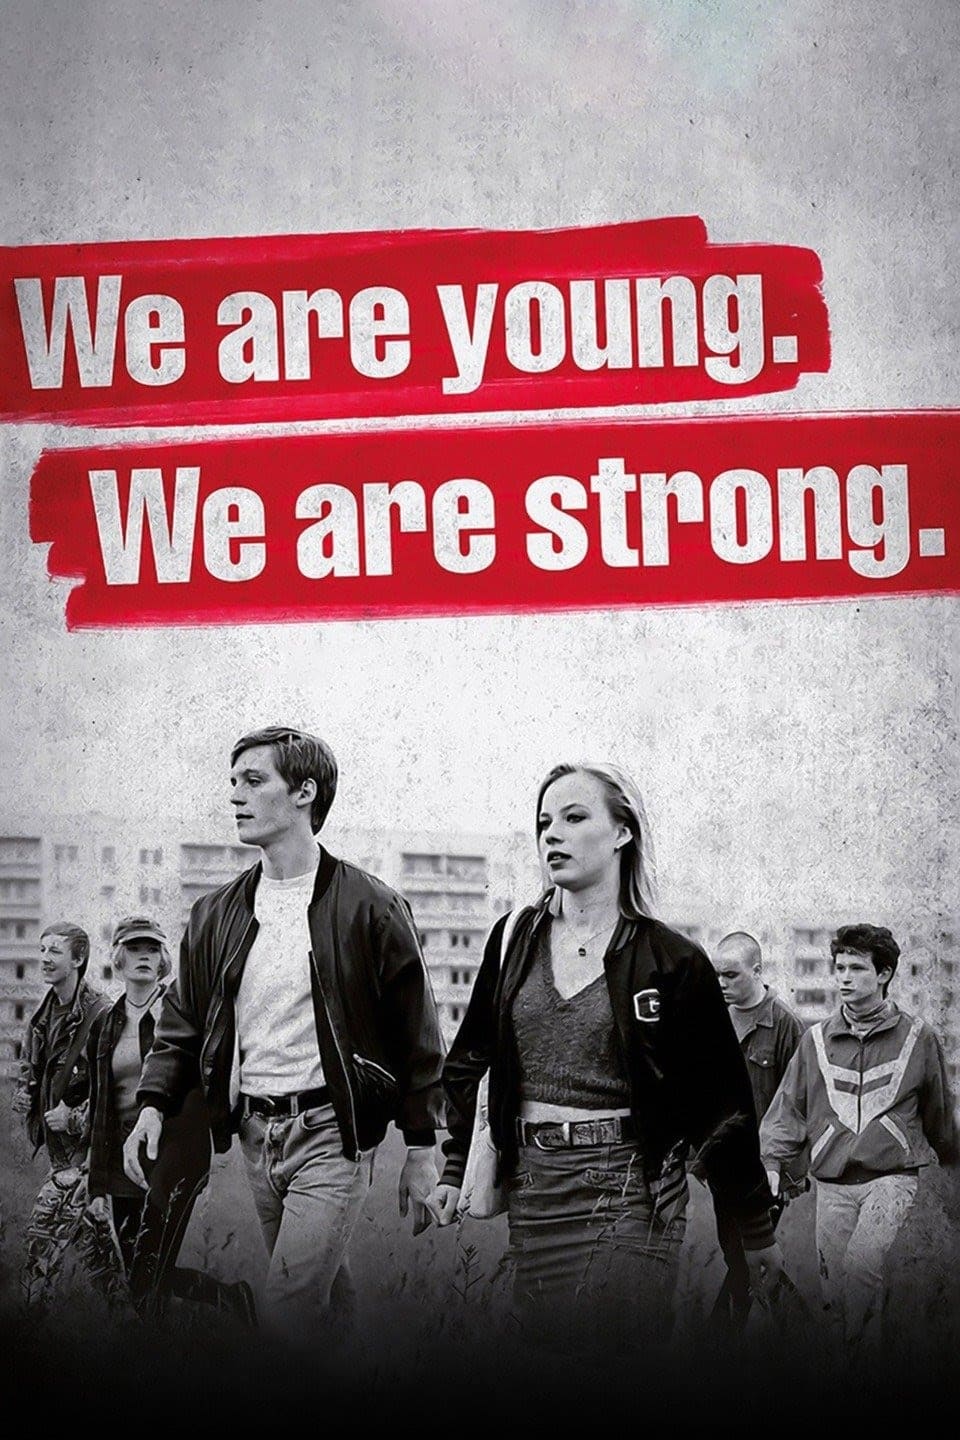 Somos jóvenes. Somos fuertes